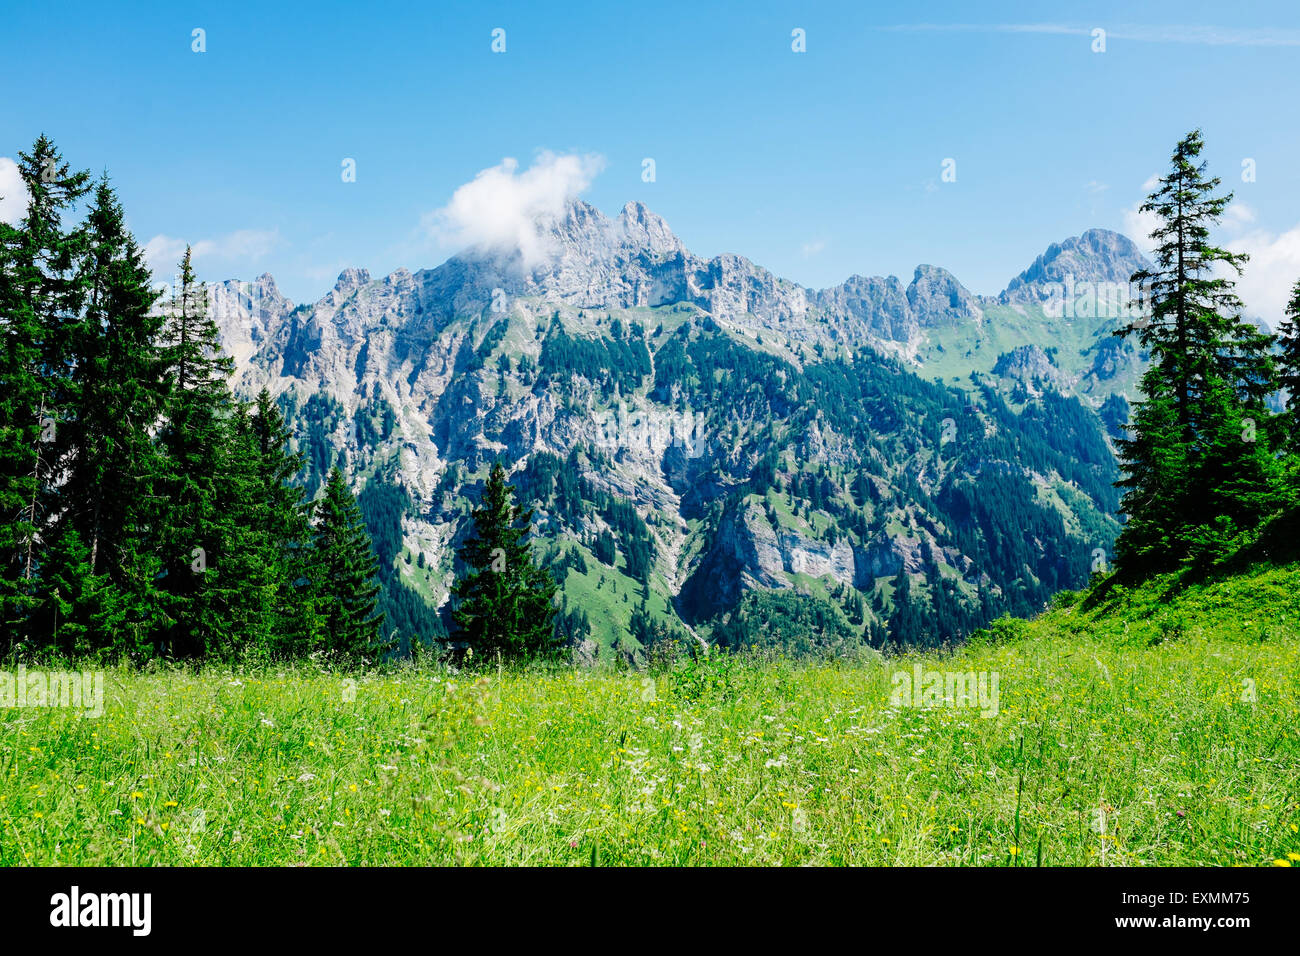 Mountain range in Tannheimer tal, Tirol, Austria Stock Photo